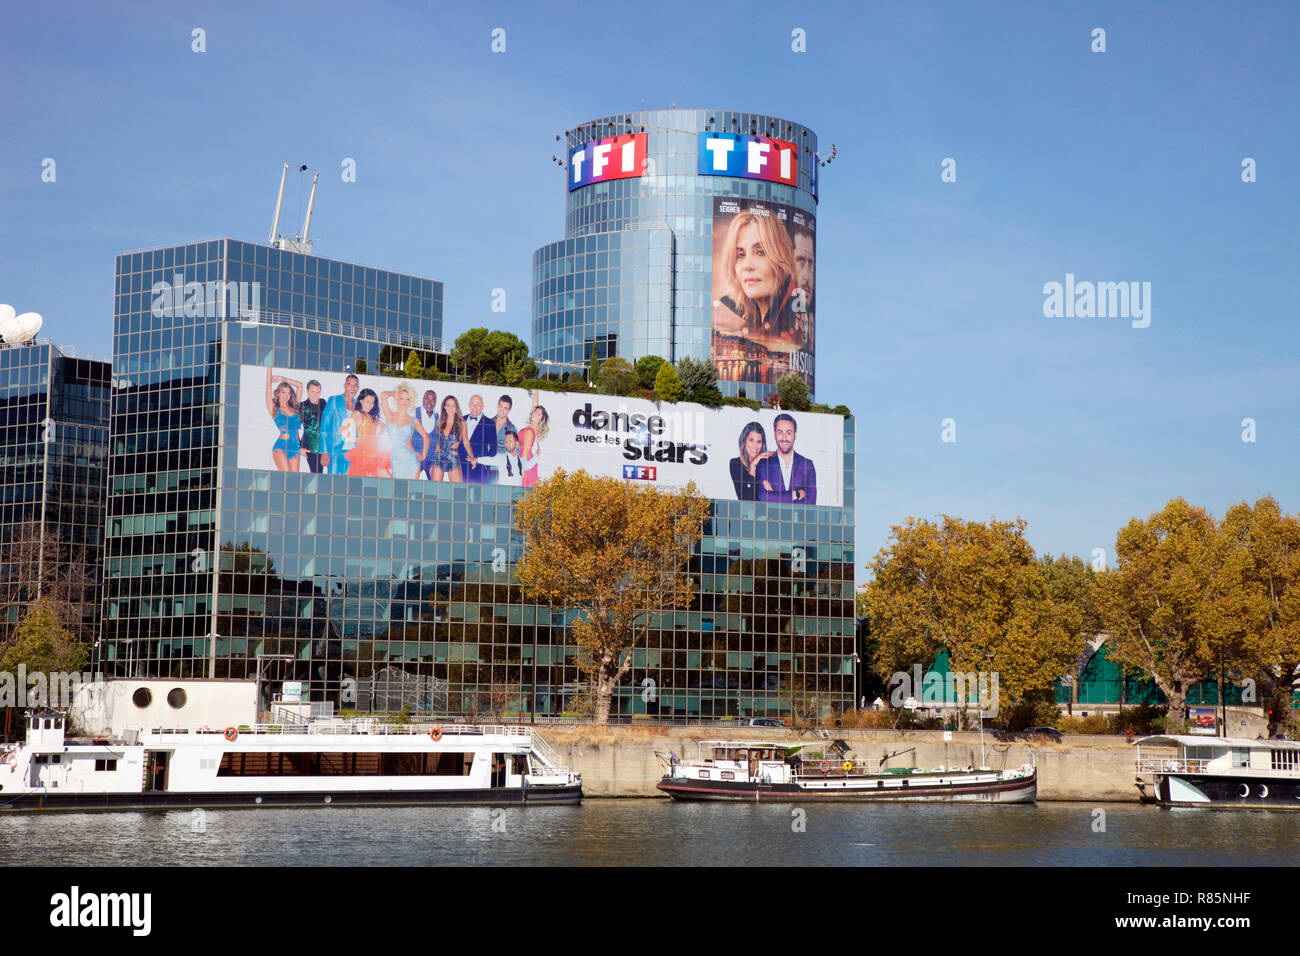 TFI, privater TV-Sender, die meisten in Europa gesehen, am Ufer der Seine, Paris Stockfoto